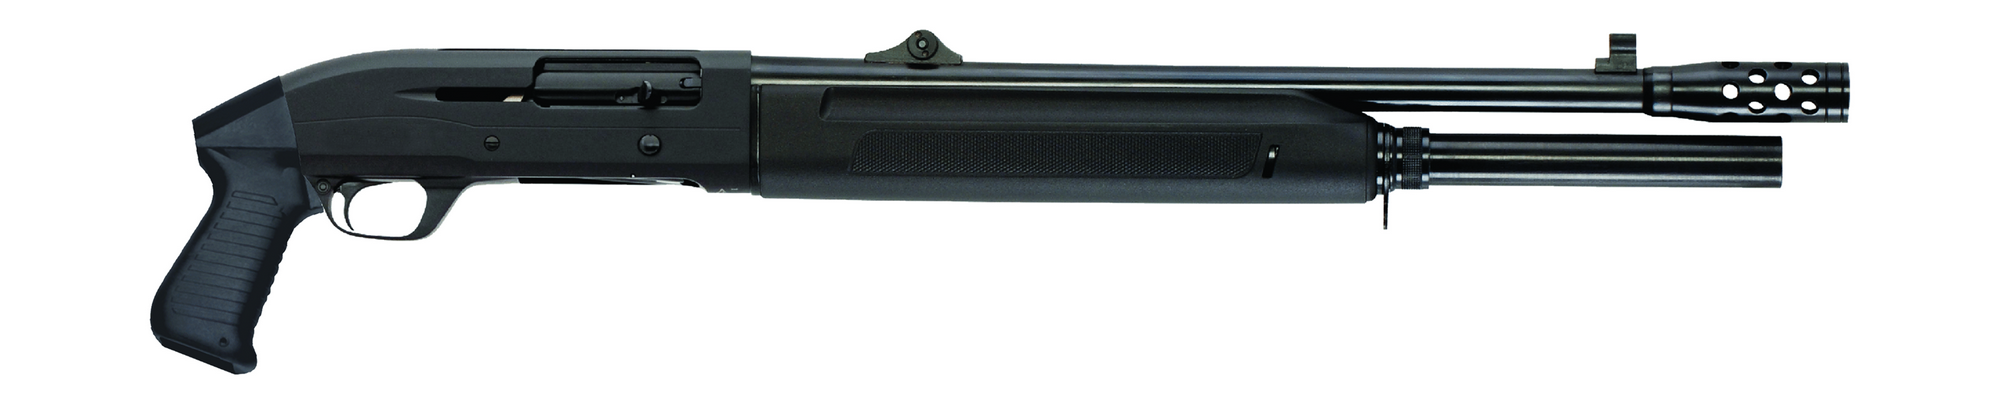 Sulun Arms Sg-322.